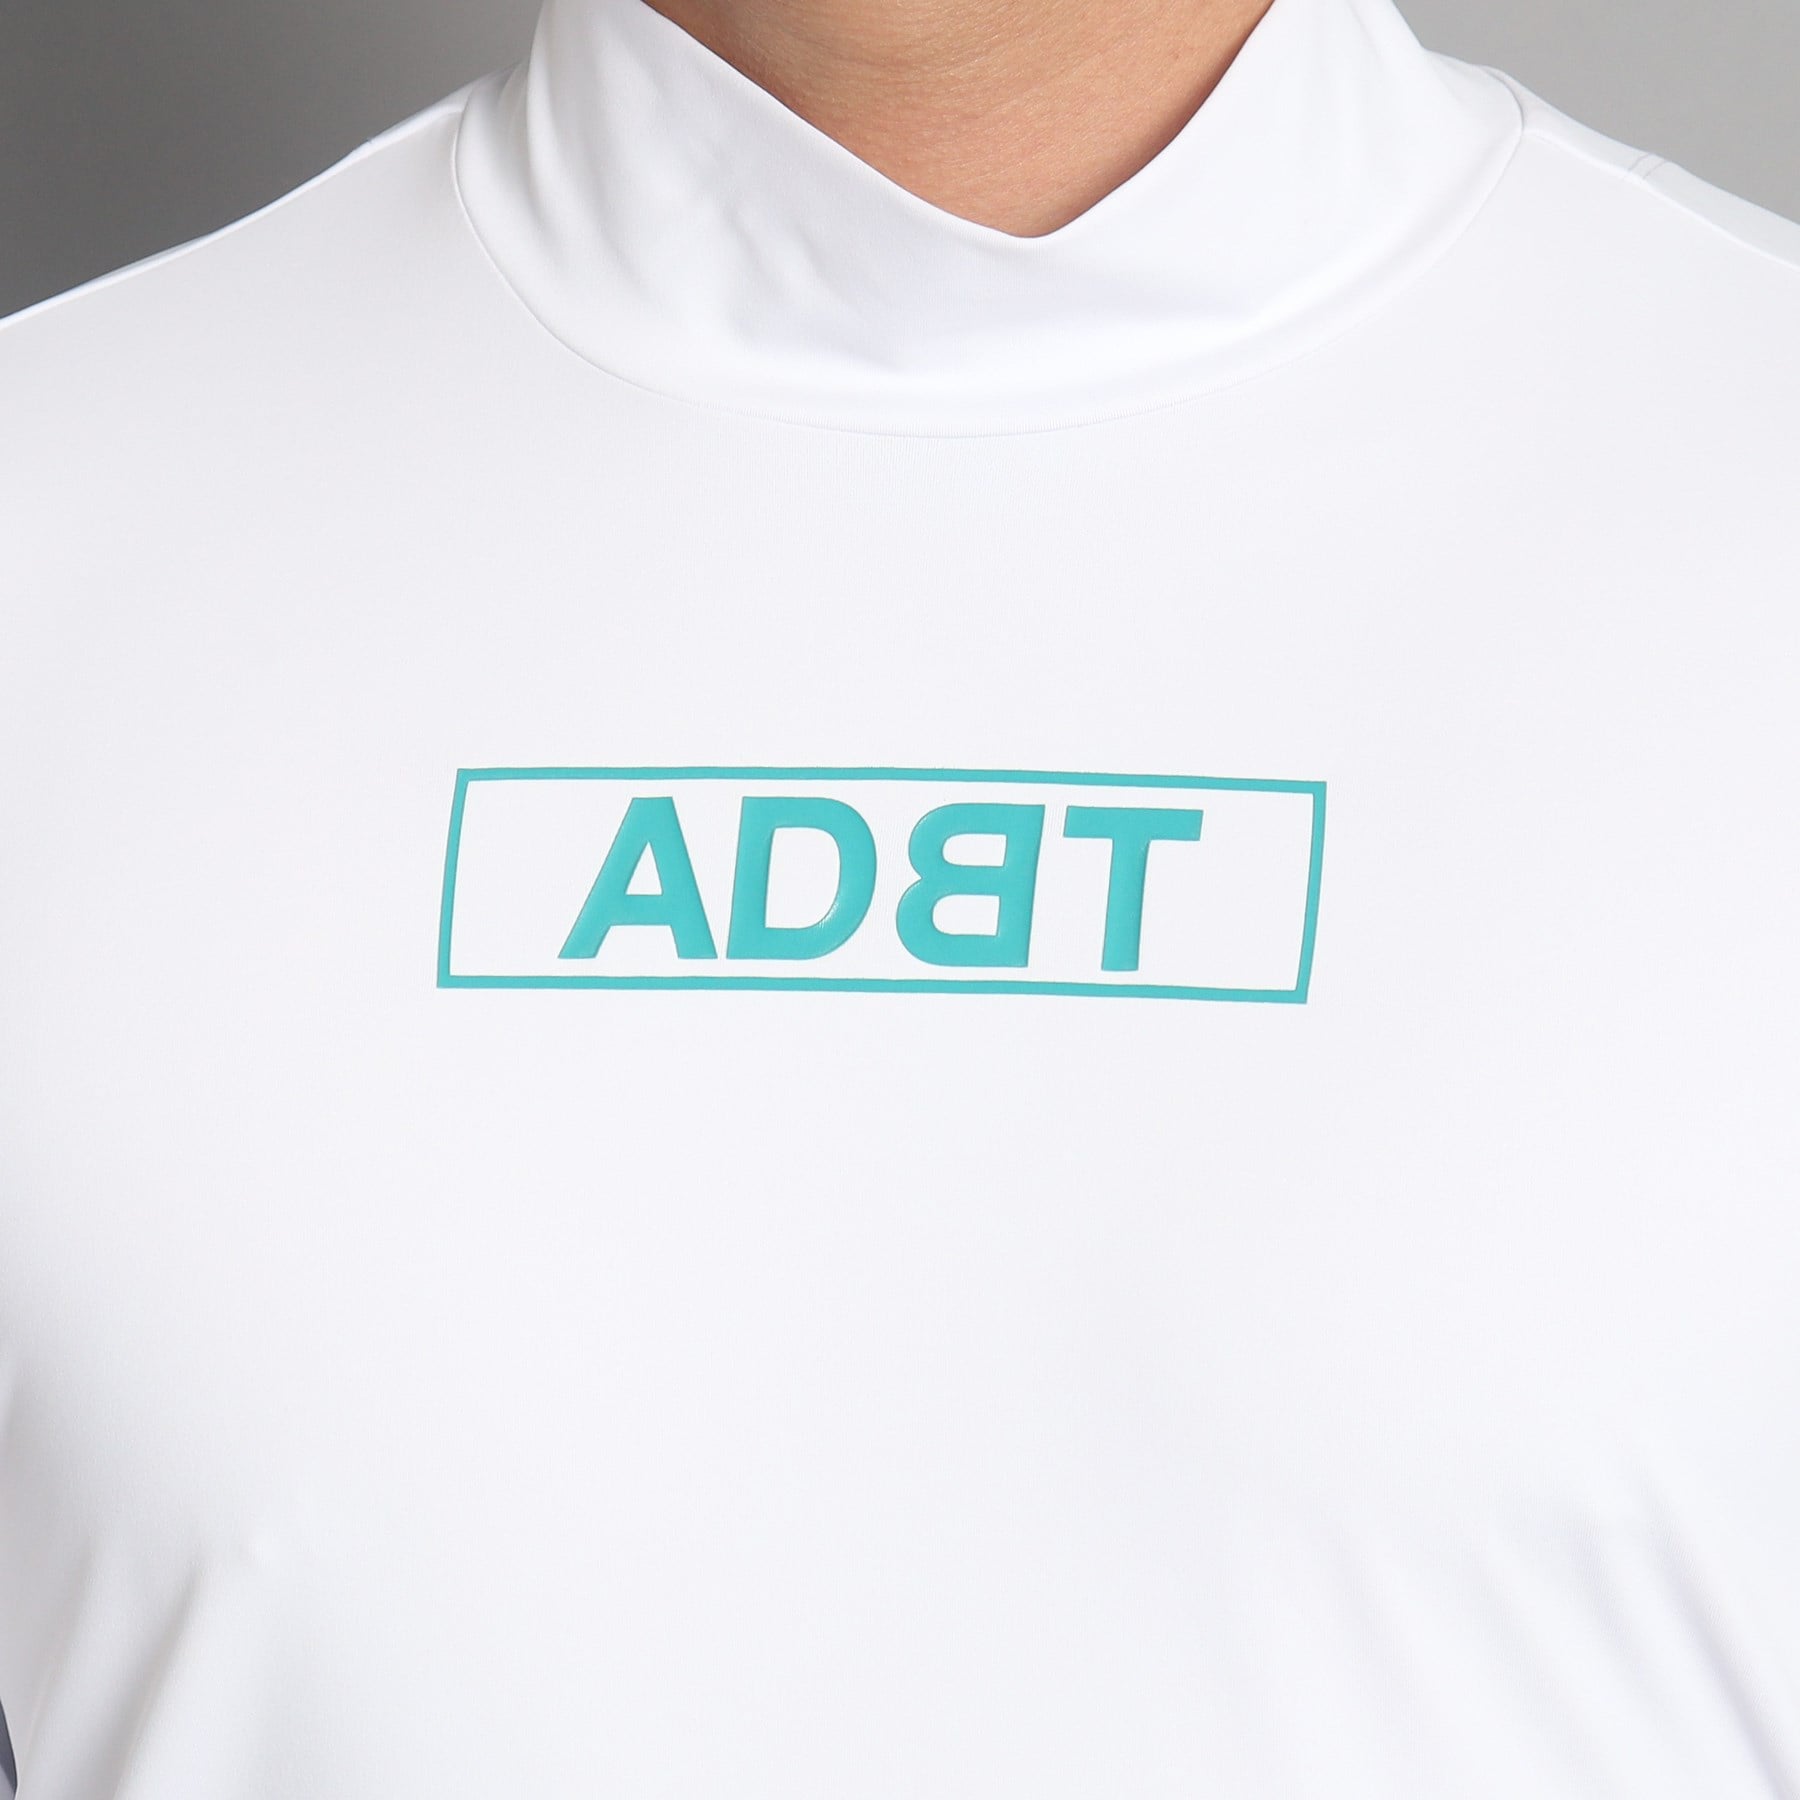 アダバット(メンズ)(adabat(Men))のロゴデザイン モックネック長袖プルオーバー5